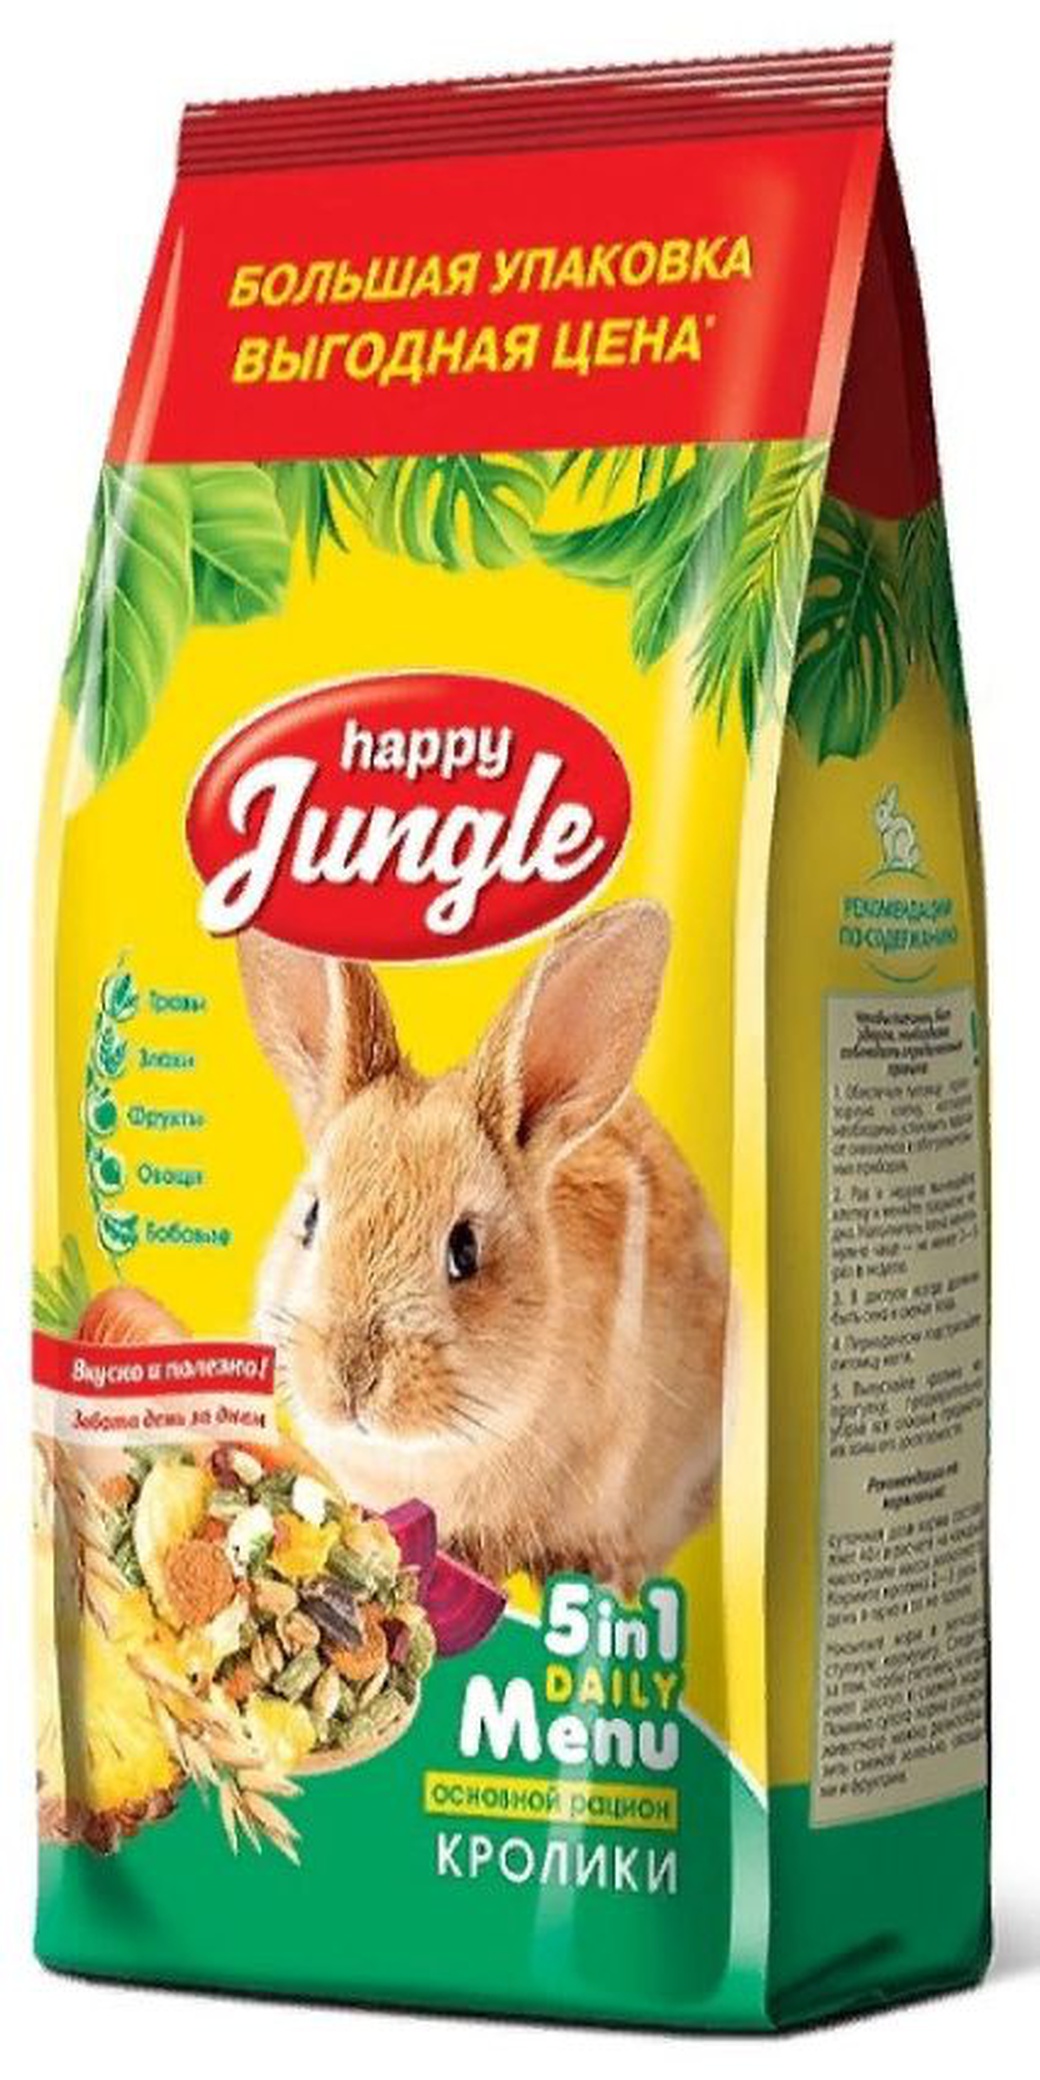 Корм для кроликов Основной рацион Happy Jungle, 900 г фото